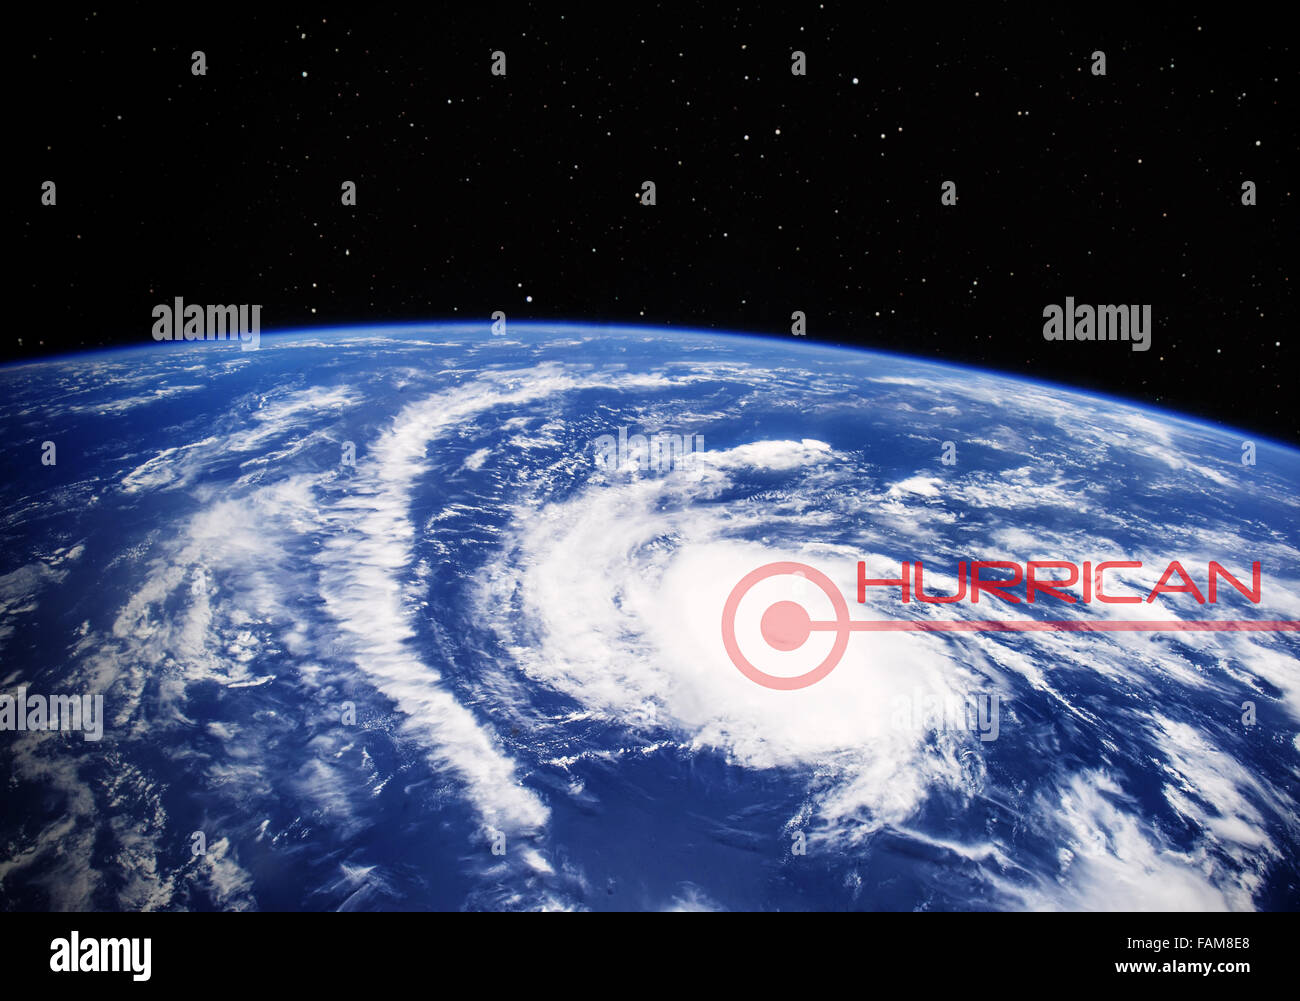 Großer Hurrikan, Blick aus dem Weltall - Elemente dieses Bildes, eingerichtet von der NASA Stockfoto